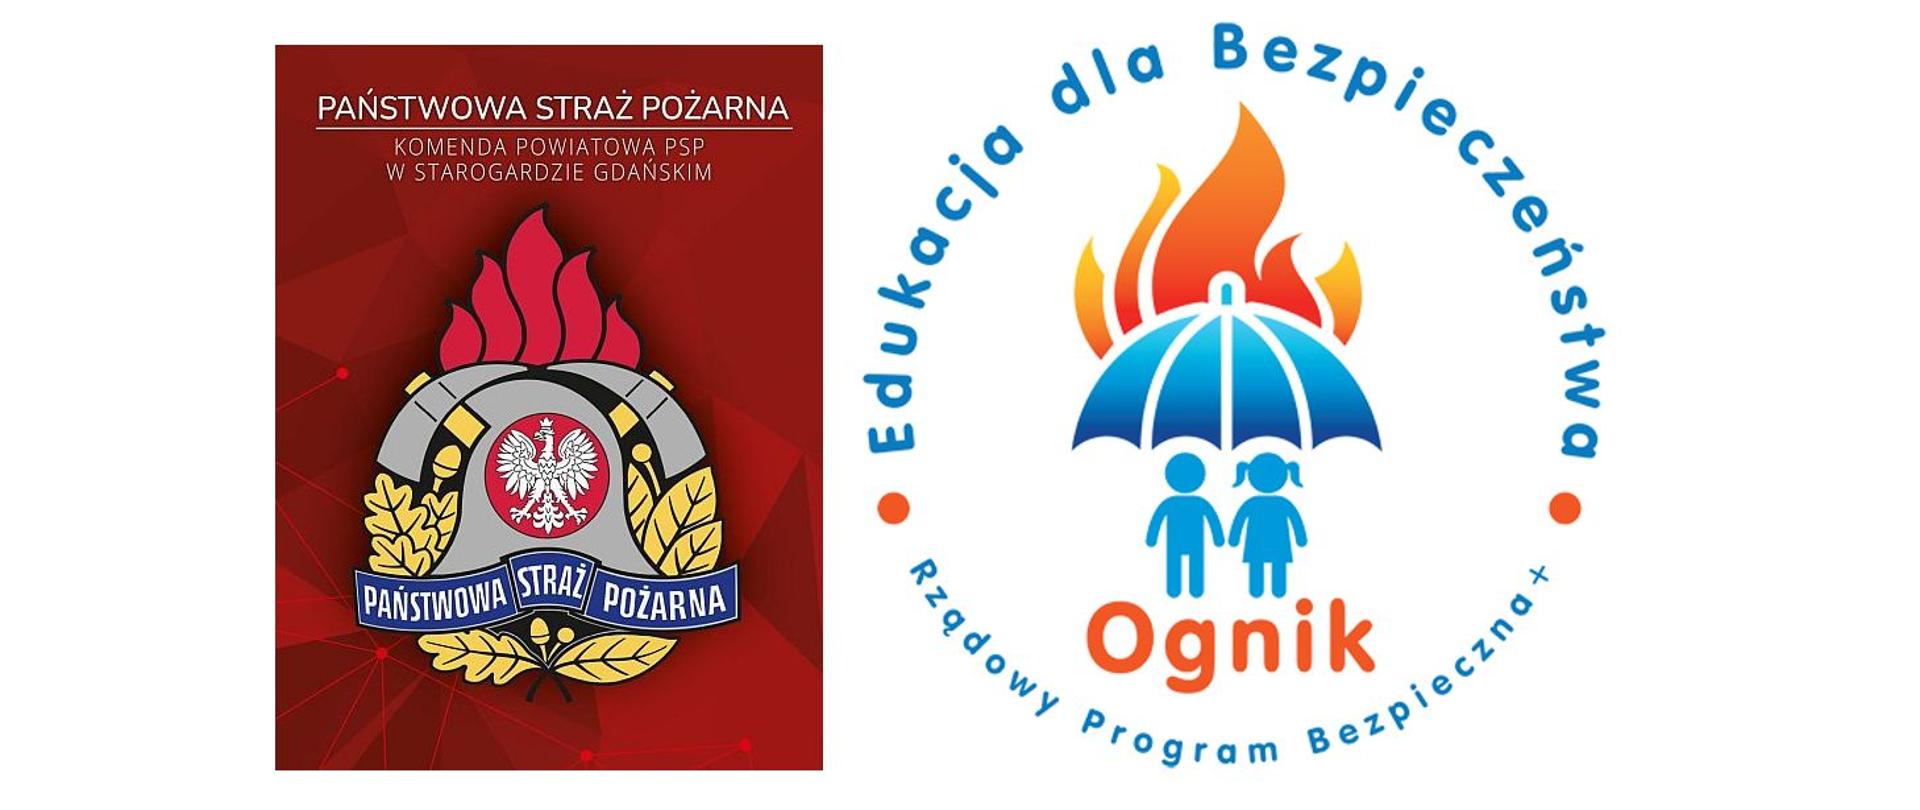 Zdjęcie przedstawia baner Komendy Powiatowej PSP w Starogardzie Gdańskim i logo sali edukacyjnej OGNIK